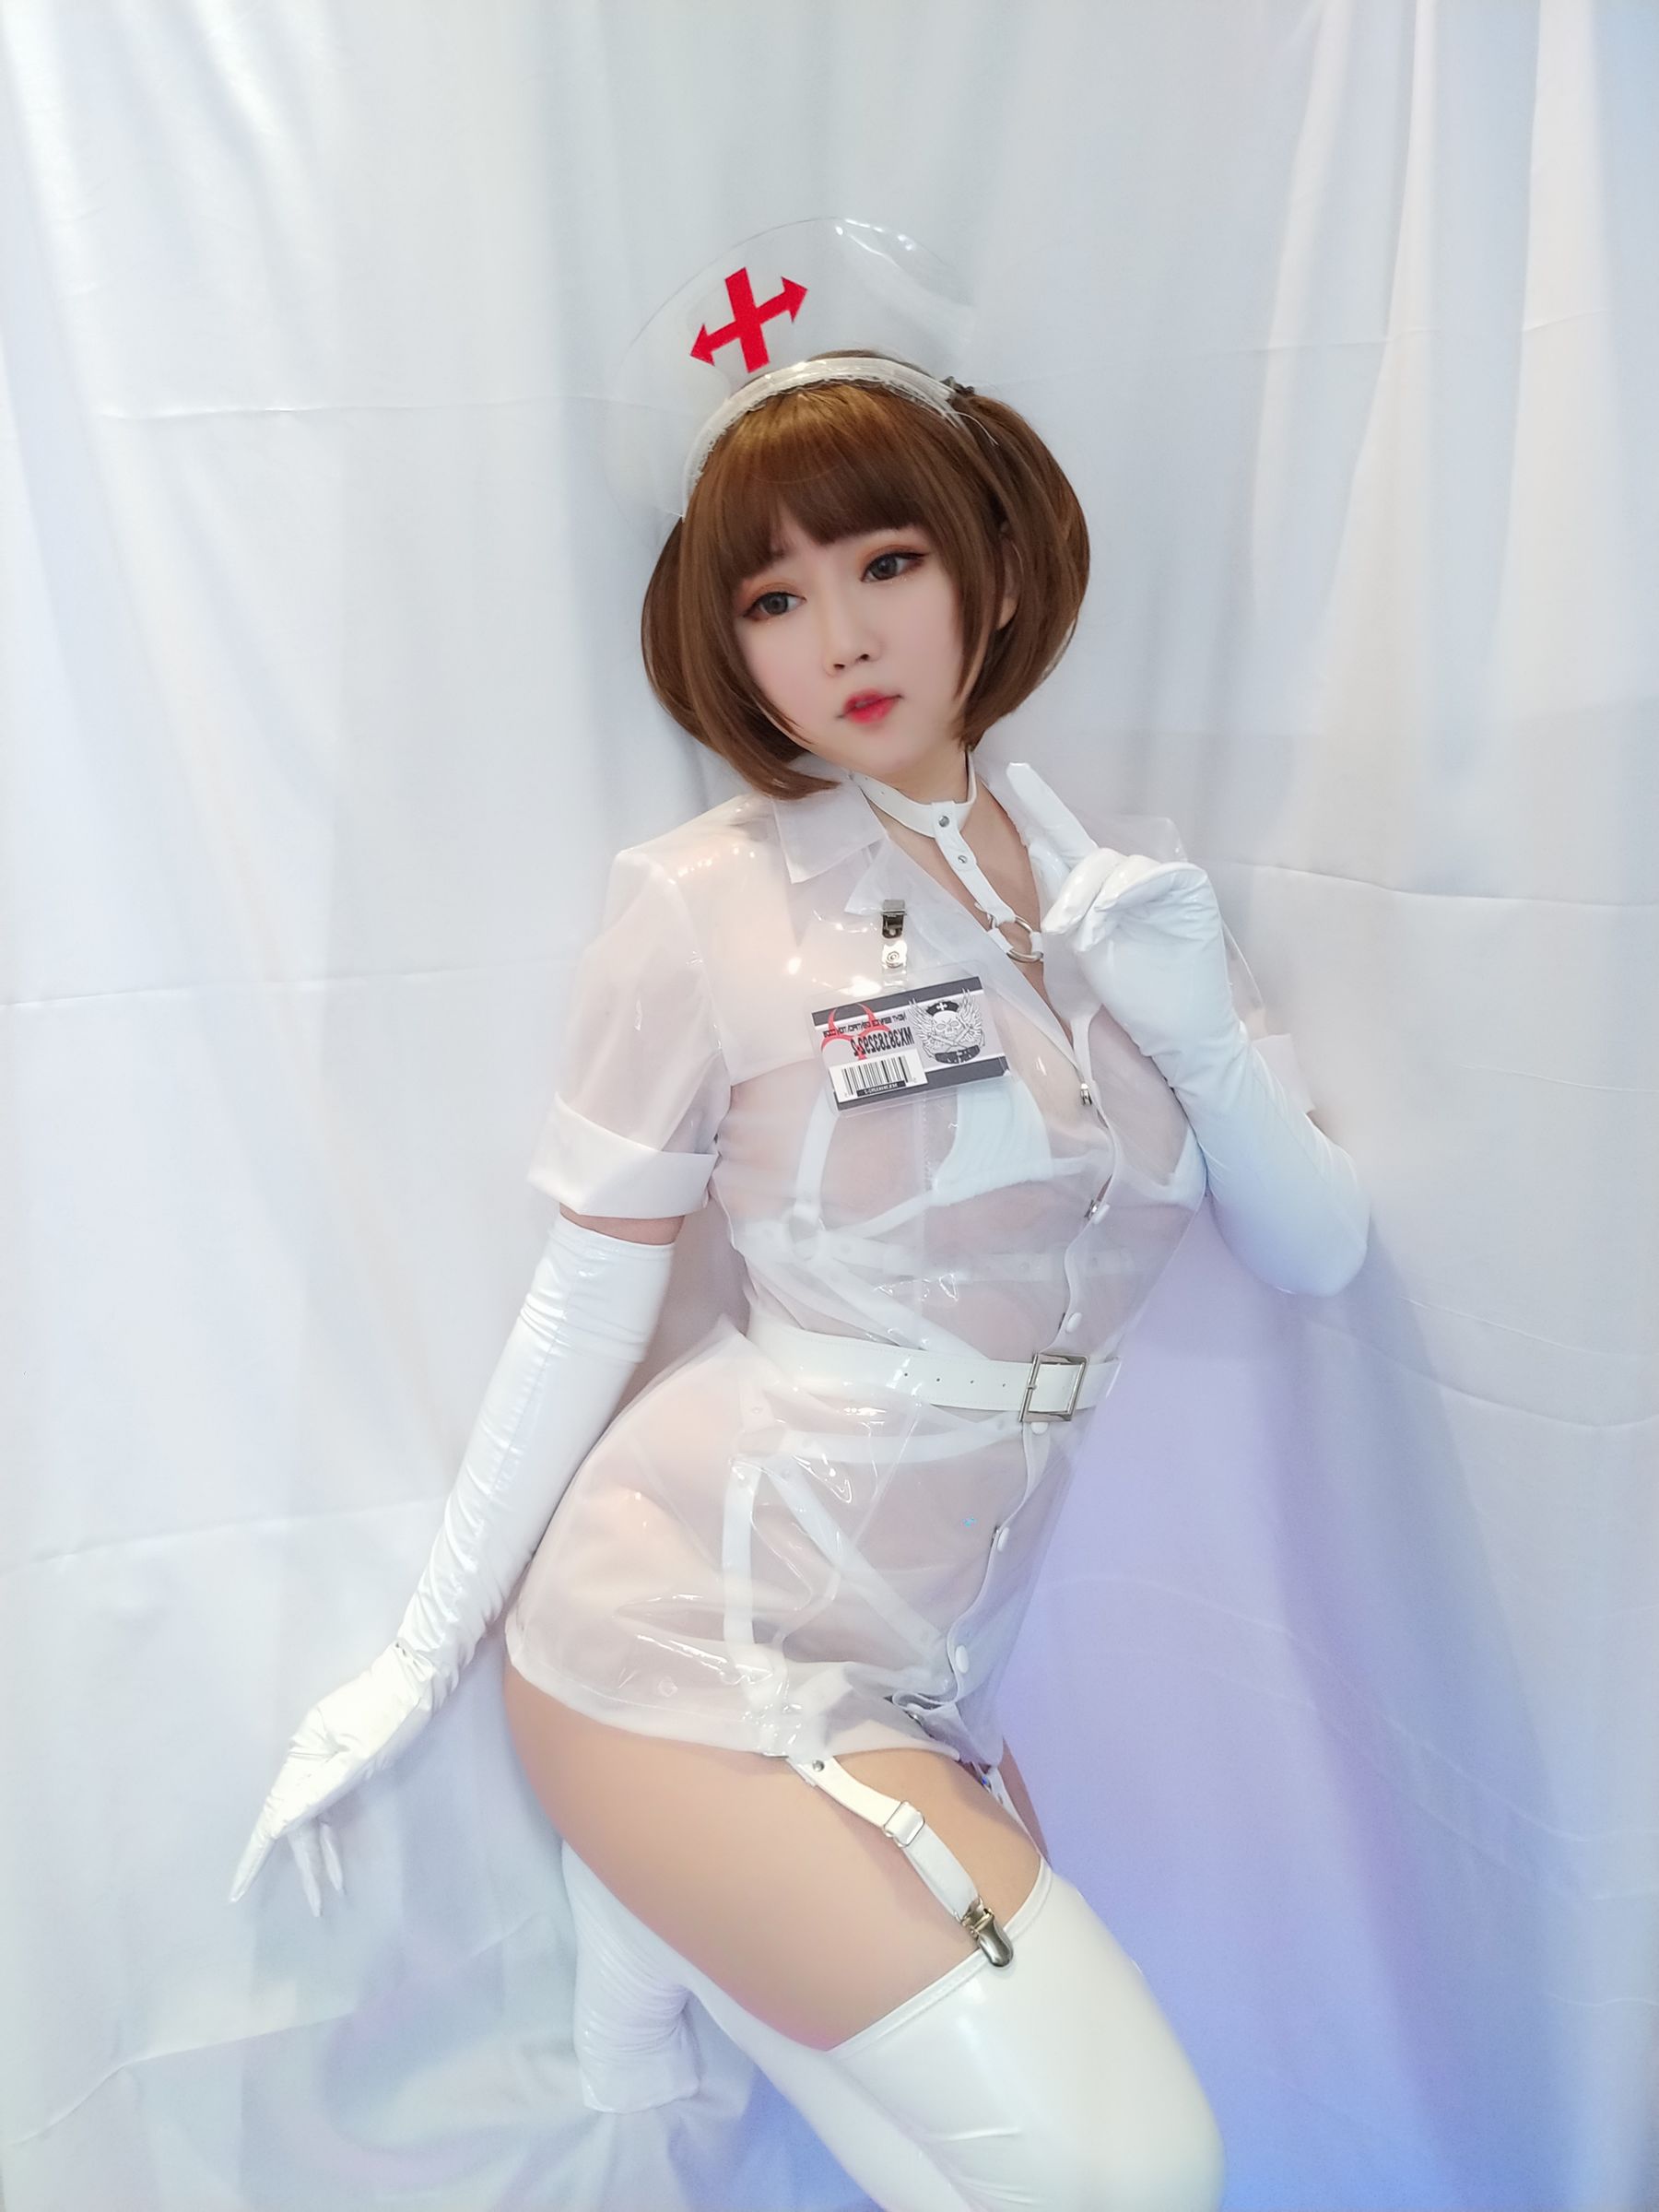 [Cosplay写真] 蜜桃少女是依酱呀 - 专属护士